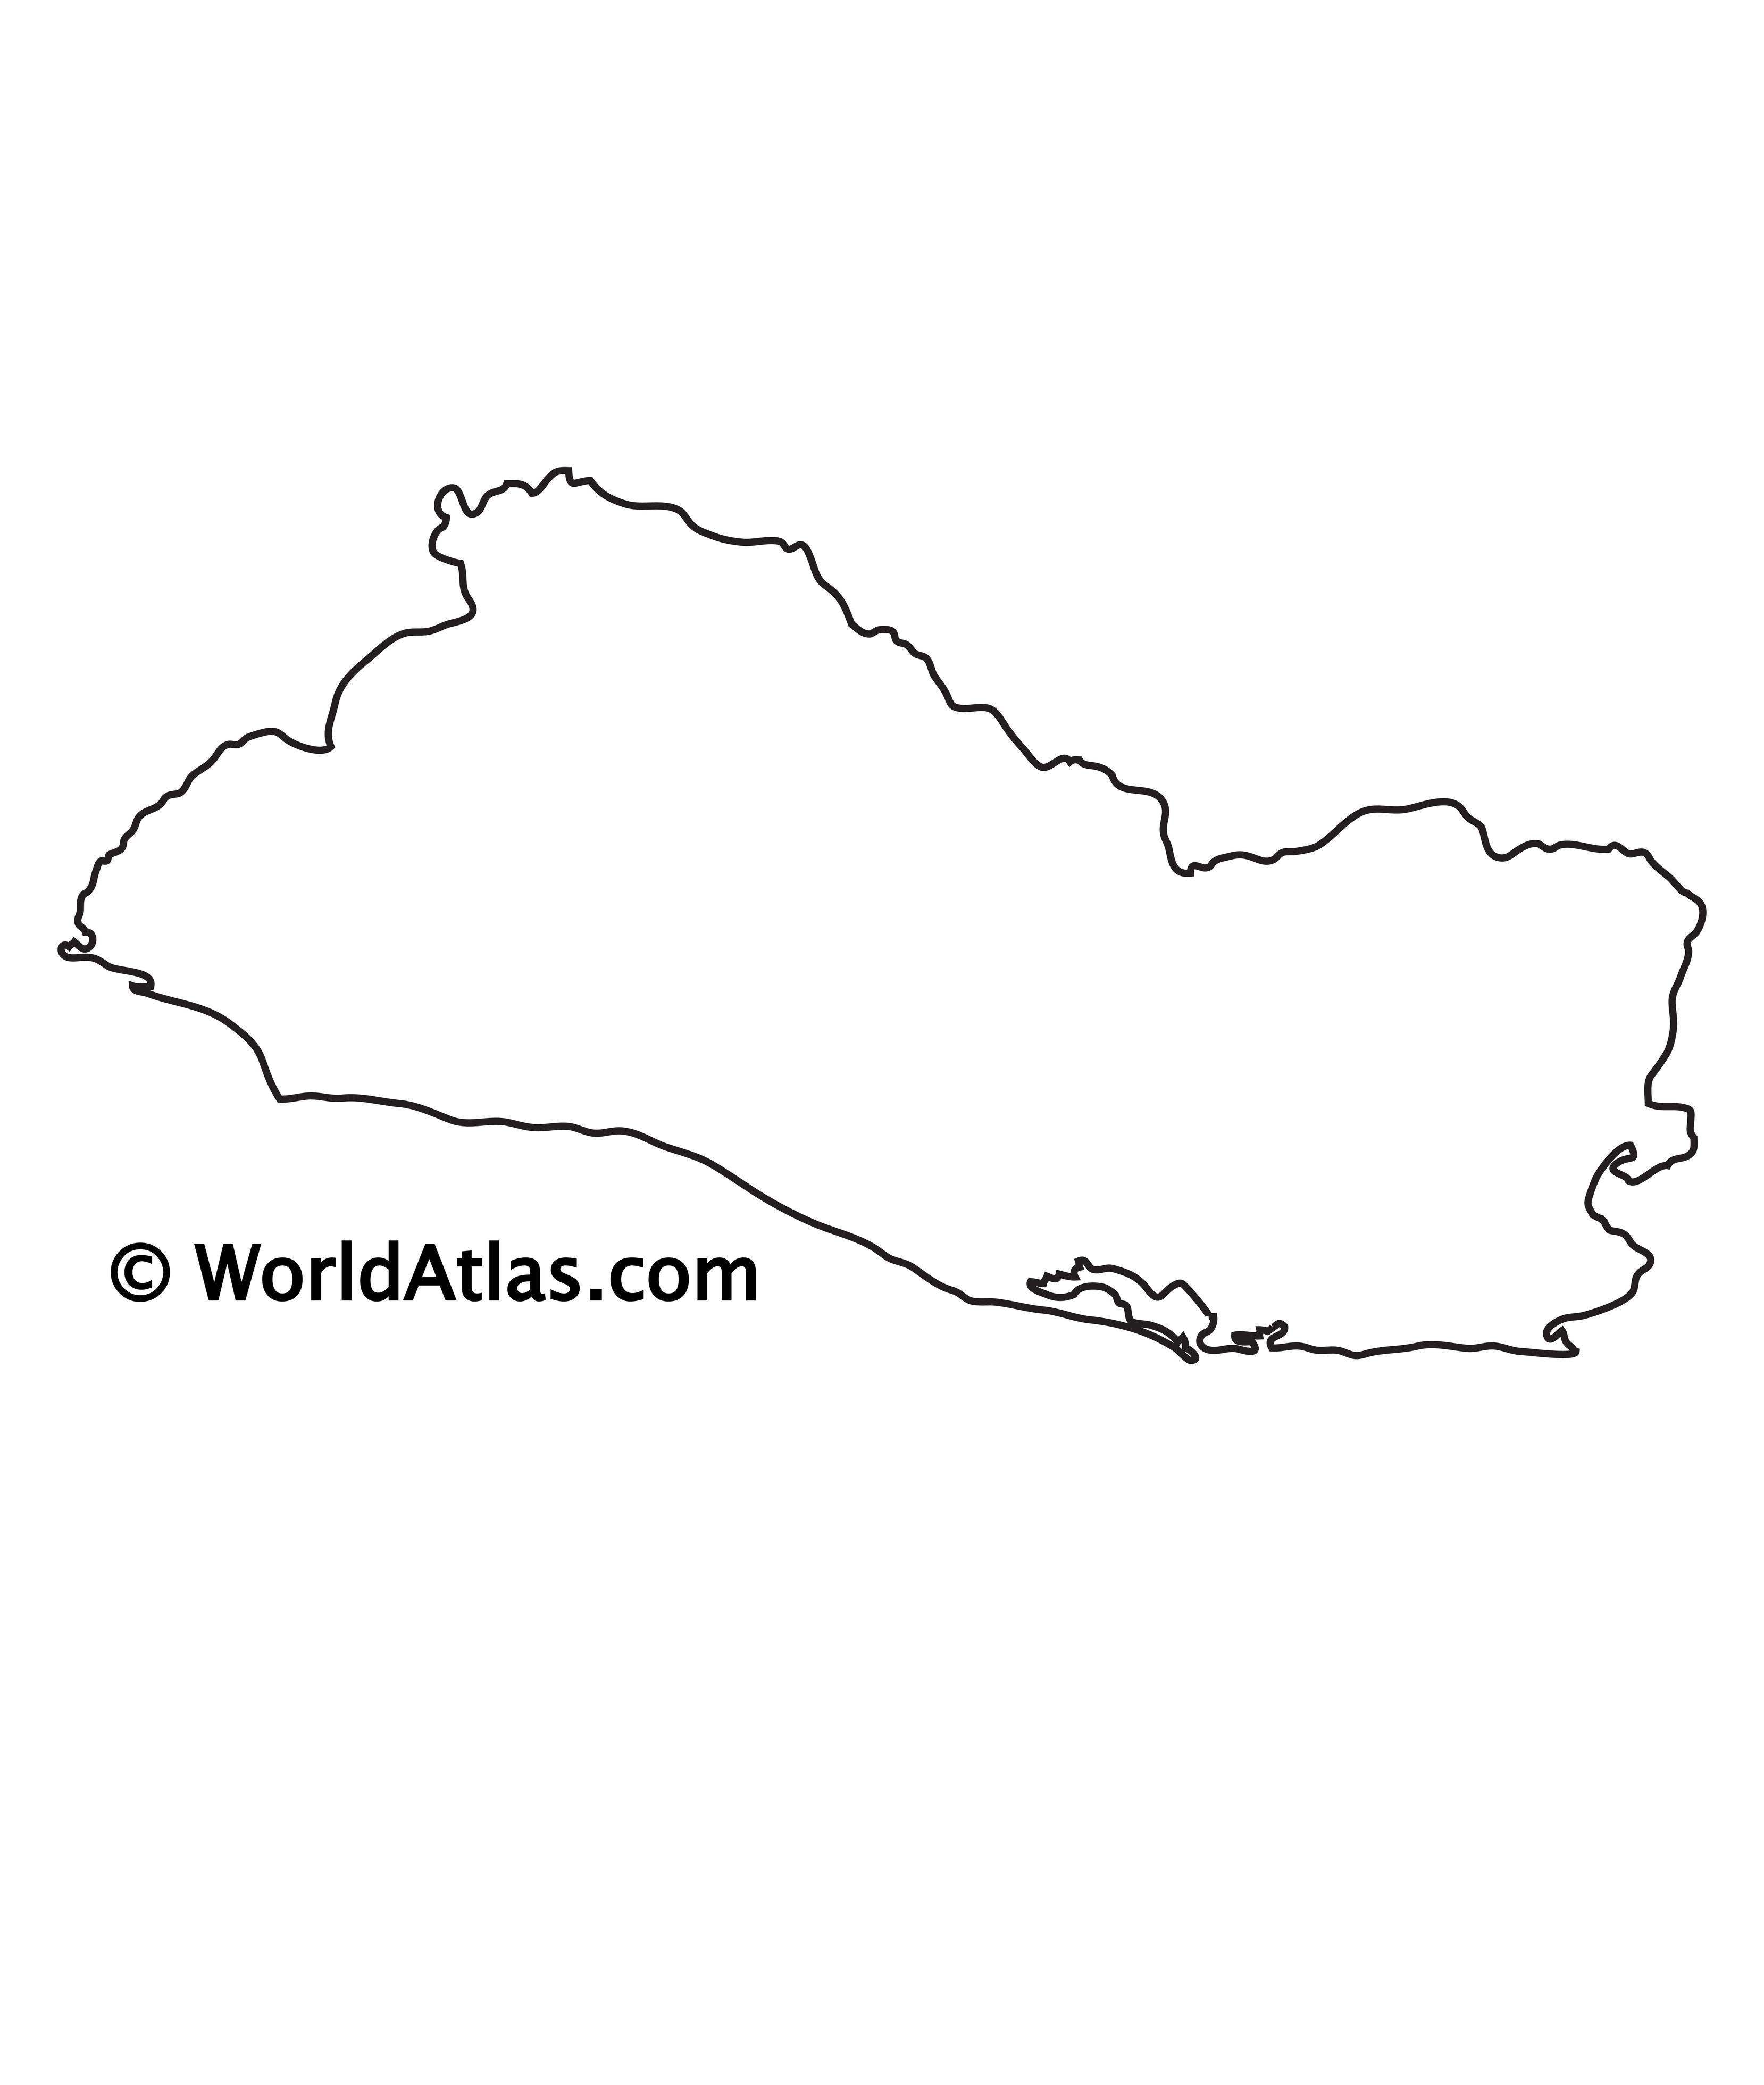 El Salvador Maps & Facts - World Atlas